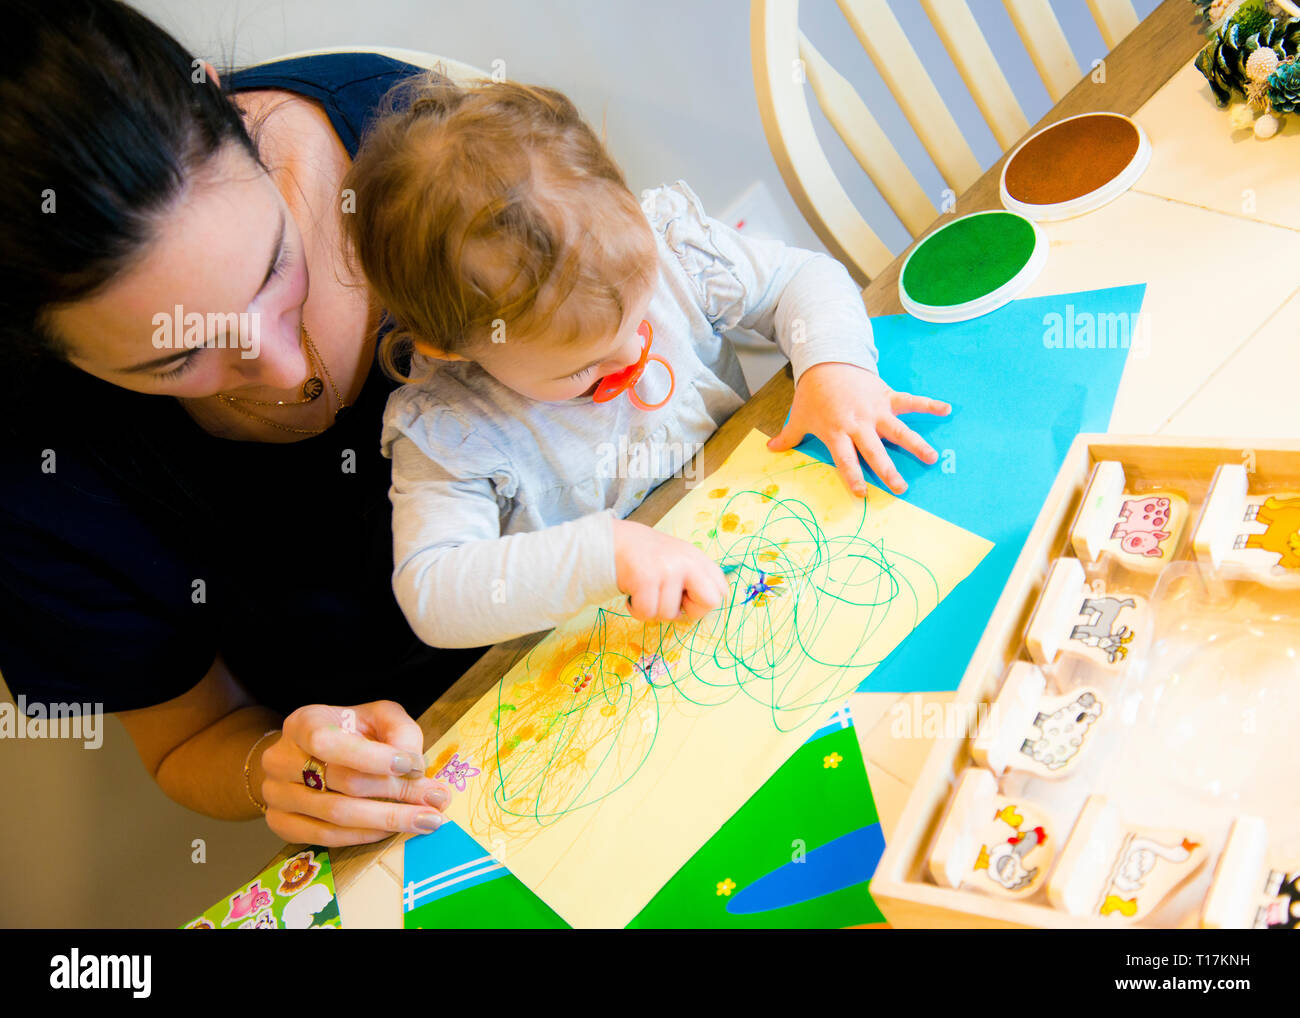 Vue en grand angle de la mère aidant la jeune fille à exprimer son art sur papier trop coloré, assis à la table de cuisine. Banque D'Images